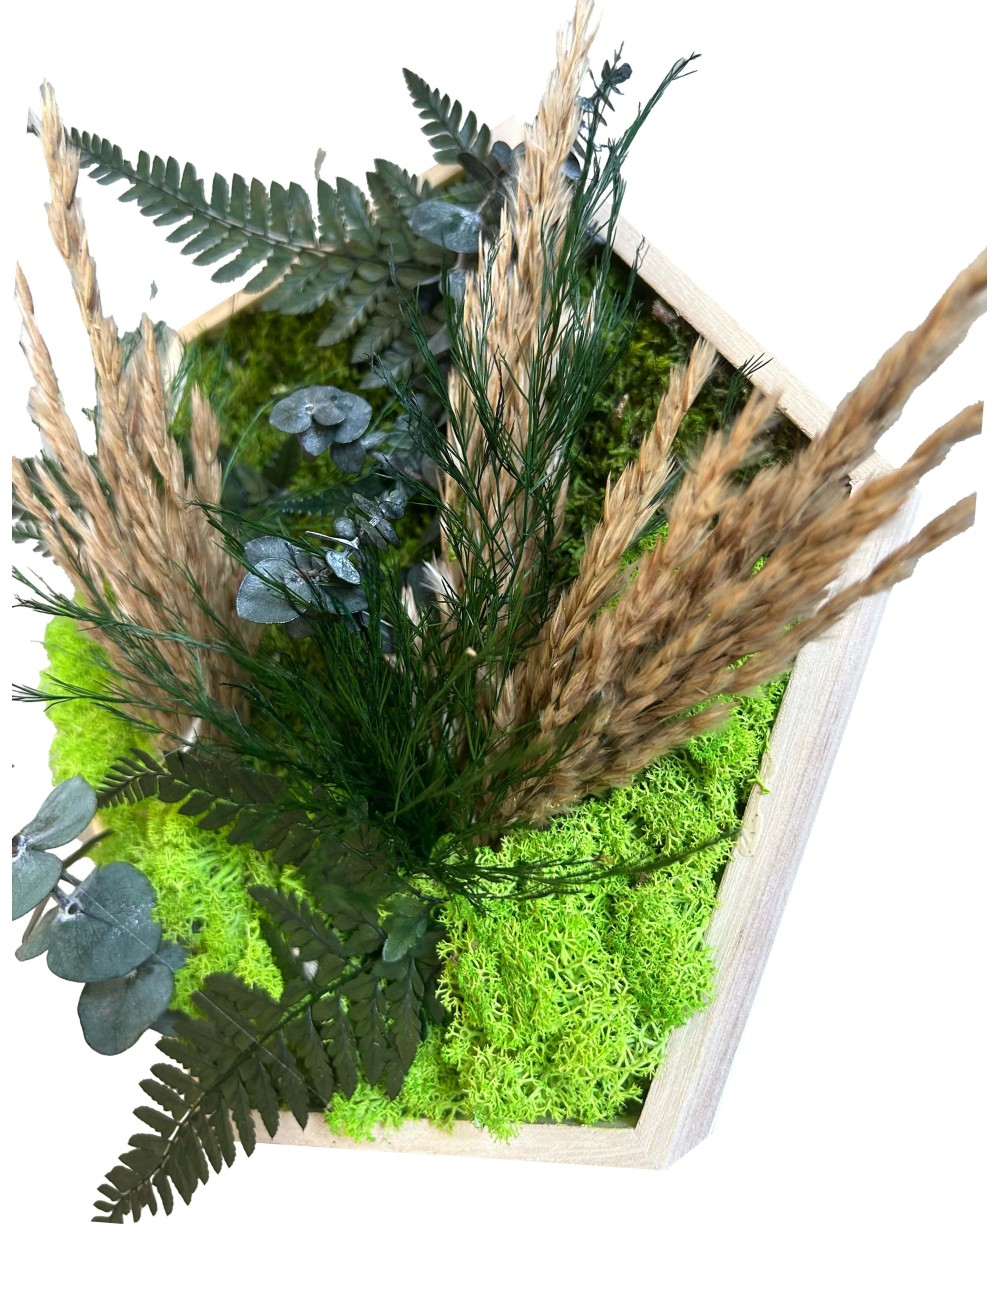 hexagone végétal en relief avec végétaux verts